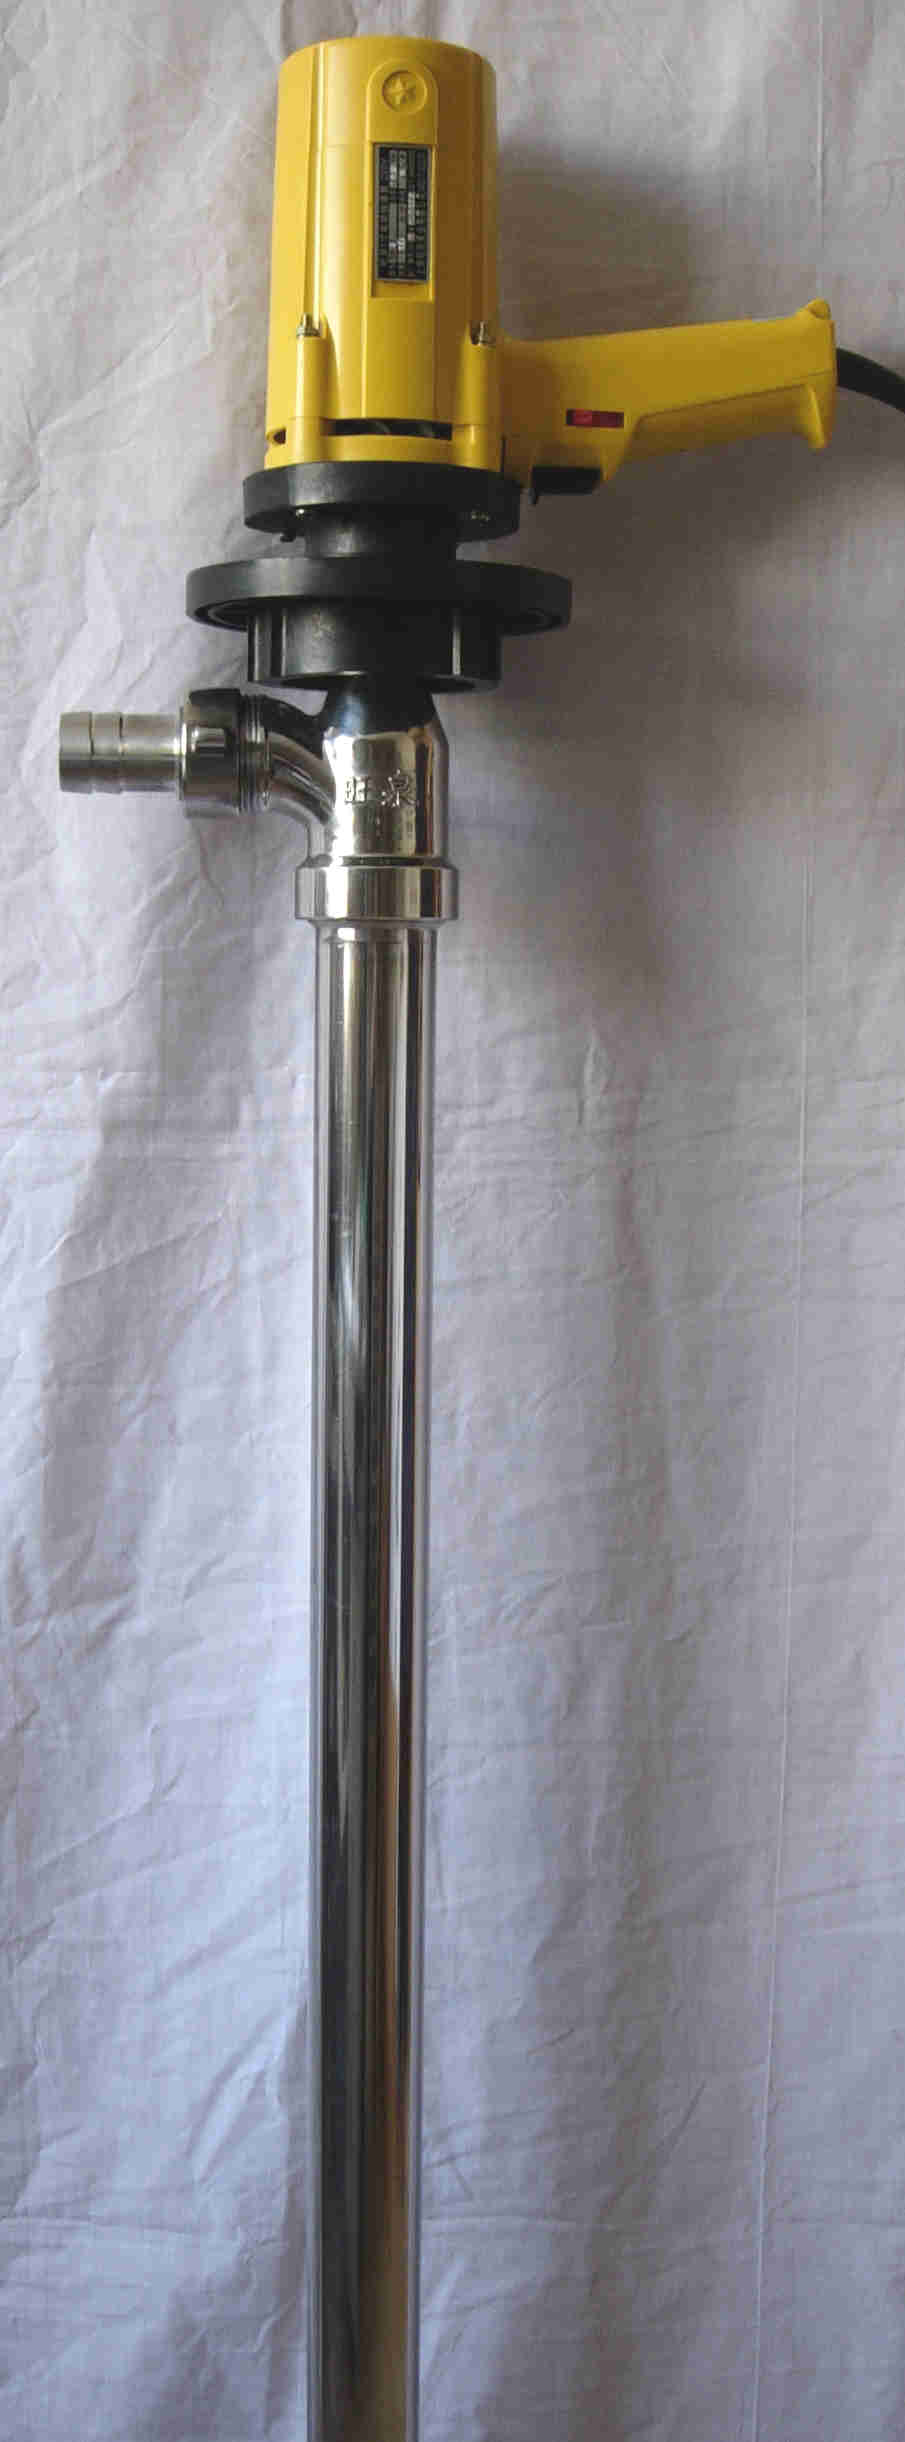 都亚高粘度抽液泵SB-9-SS-3|220v抽油泵